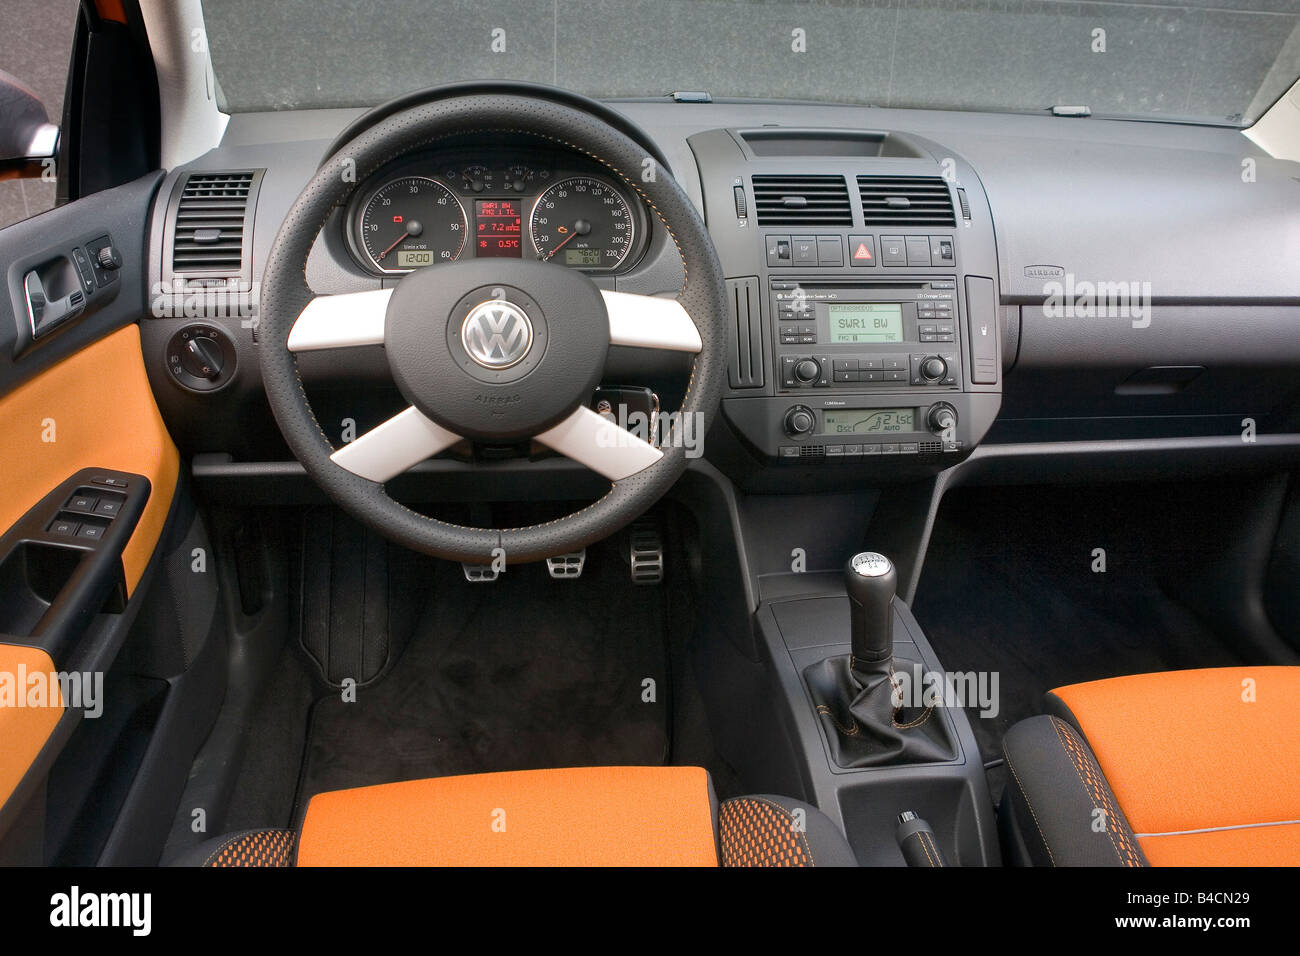 VW Volkswagen Polo trasversale 1.4 TDI, modello anno 2006-, arancione , vista interna, vista interna, pozzetto, tecnica/accessorio, accesso Foto Stock